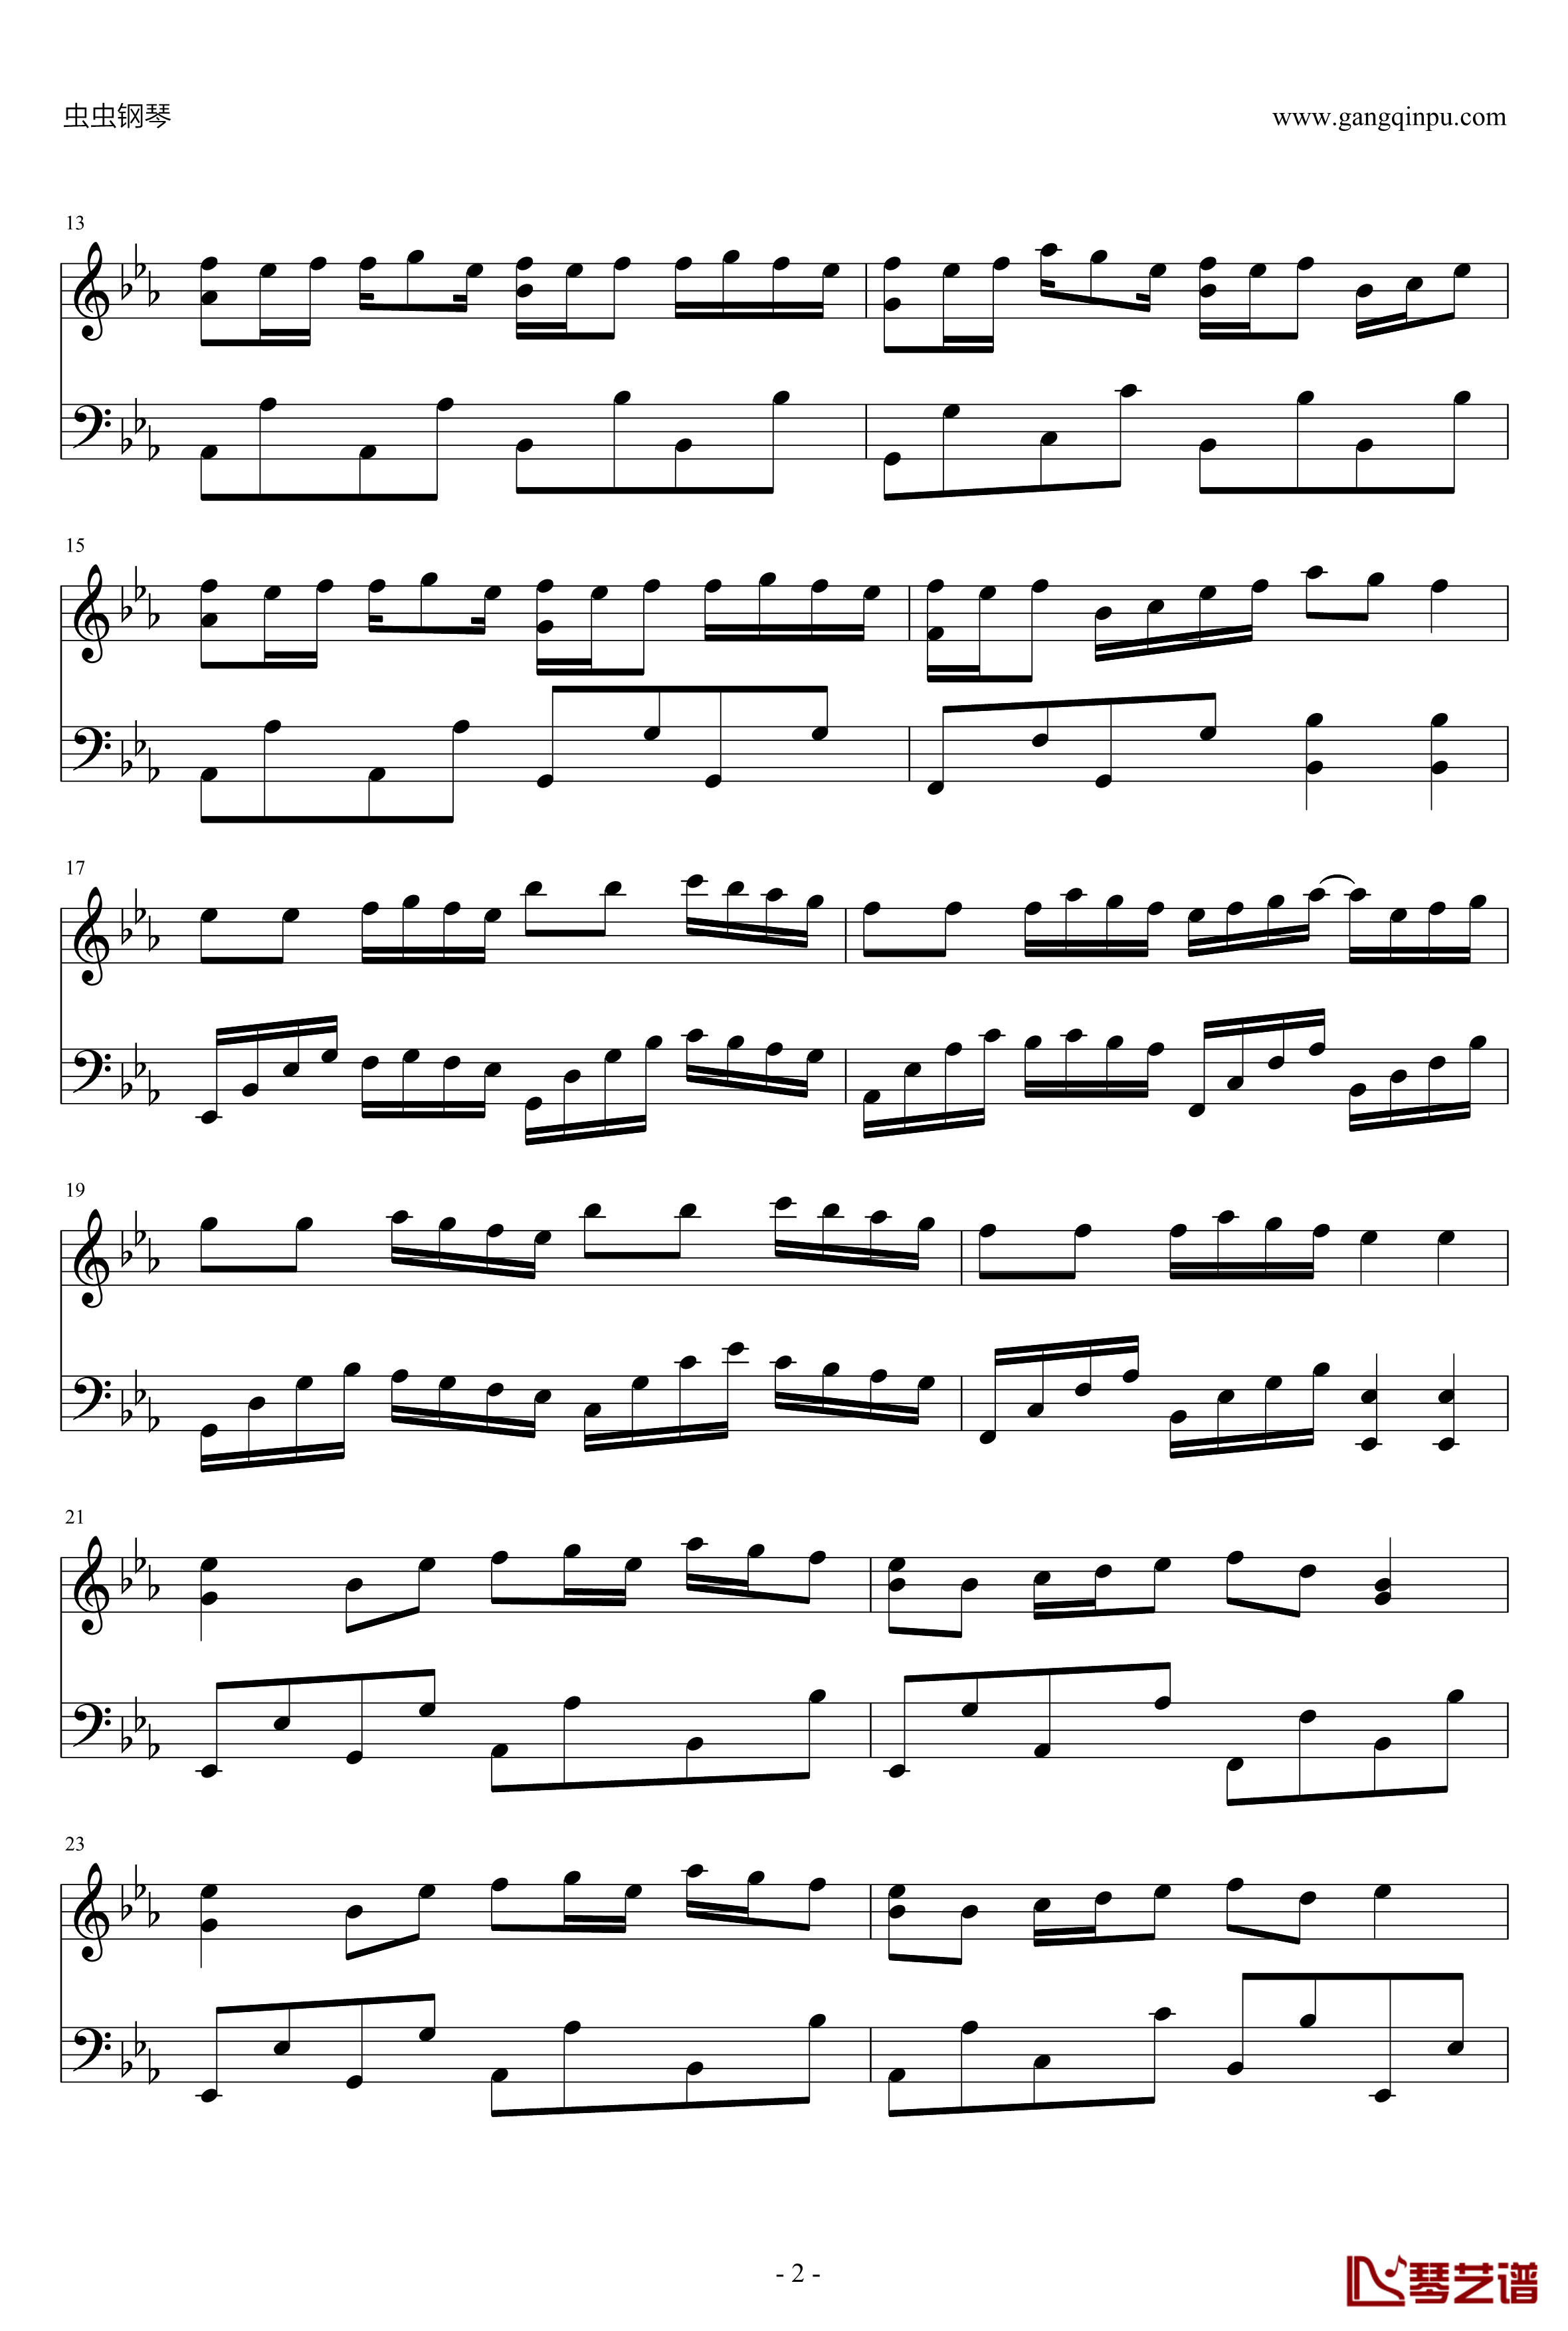 Linear Slope钢琴谱-線形勾配-かわいいシリーズ万恶之源2